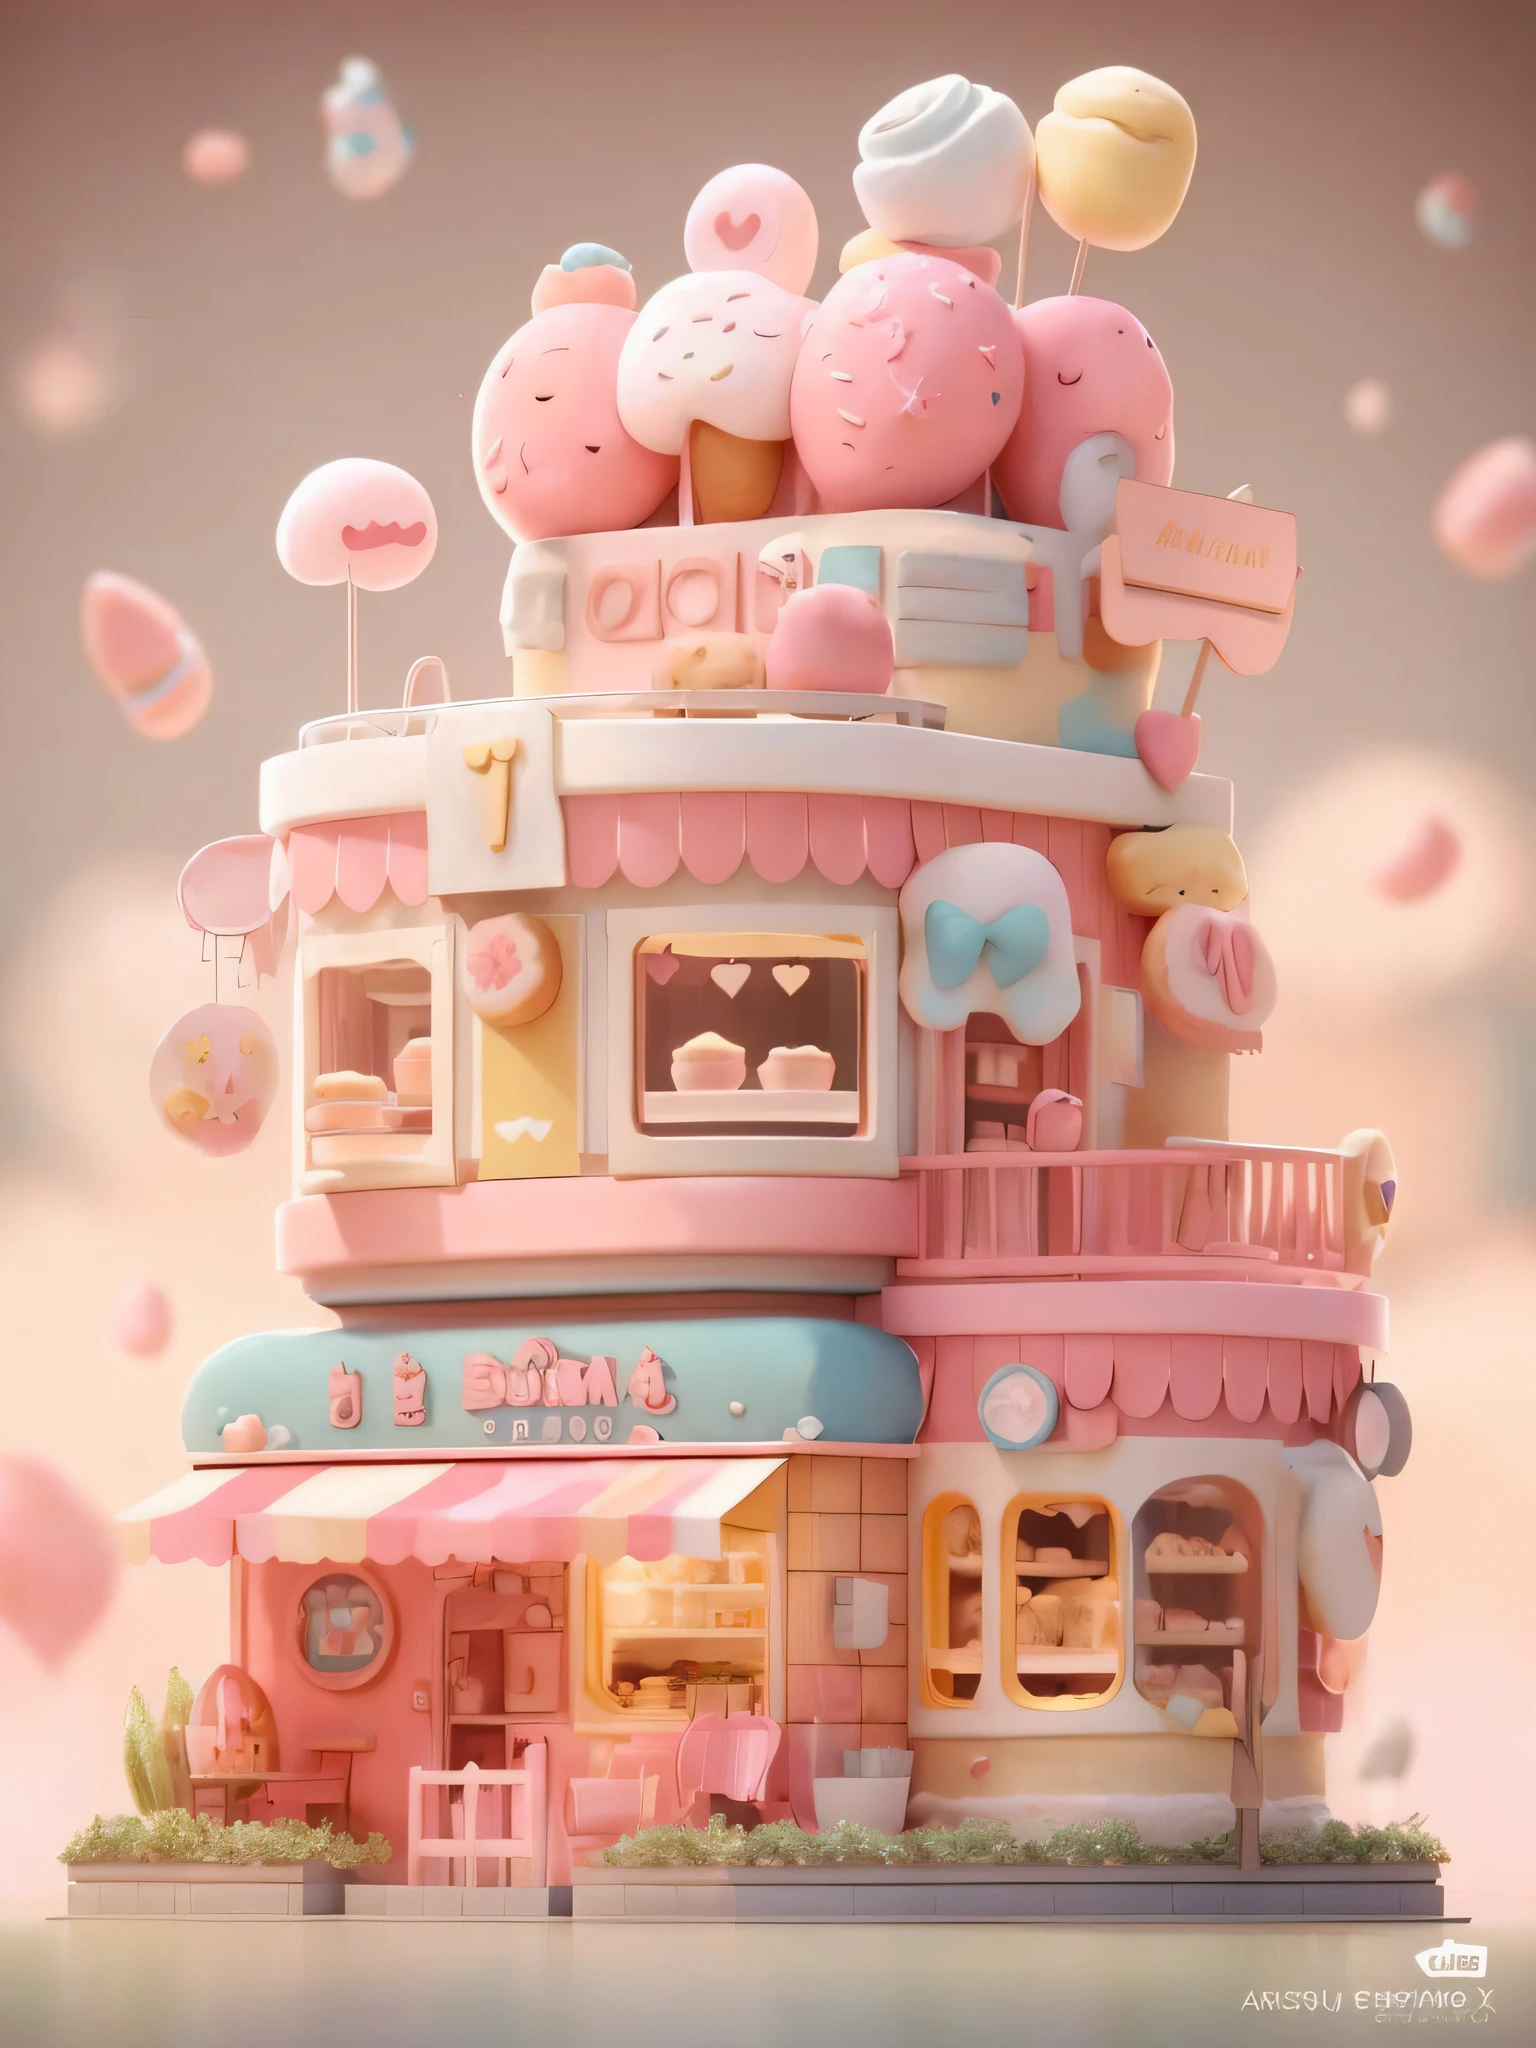 Il y a un bâtiment rose et blanc avec beaucoup de beignets sur le dessus, beau rendu 3D, rendu kawaii hq, Belle boulangerie, Boulangerie de fantaisie, Rendu 3D stylisé, Rendu 3D stylisé, Stylisé comme un rendu 3D, bel art numérique détaillé, Dans une maison de style Sweet Earth, rendu super détaillé, solution! C4D